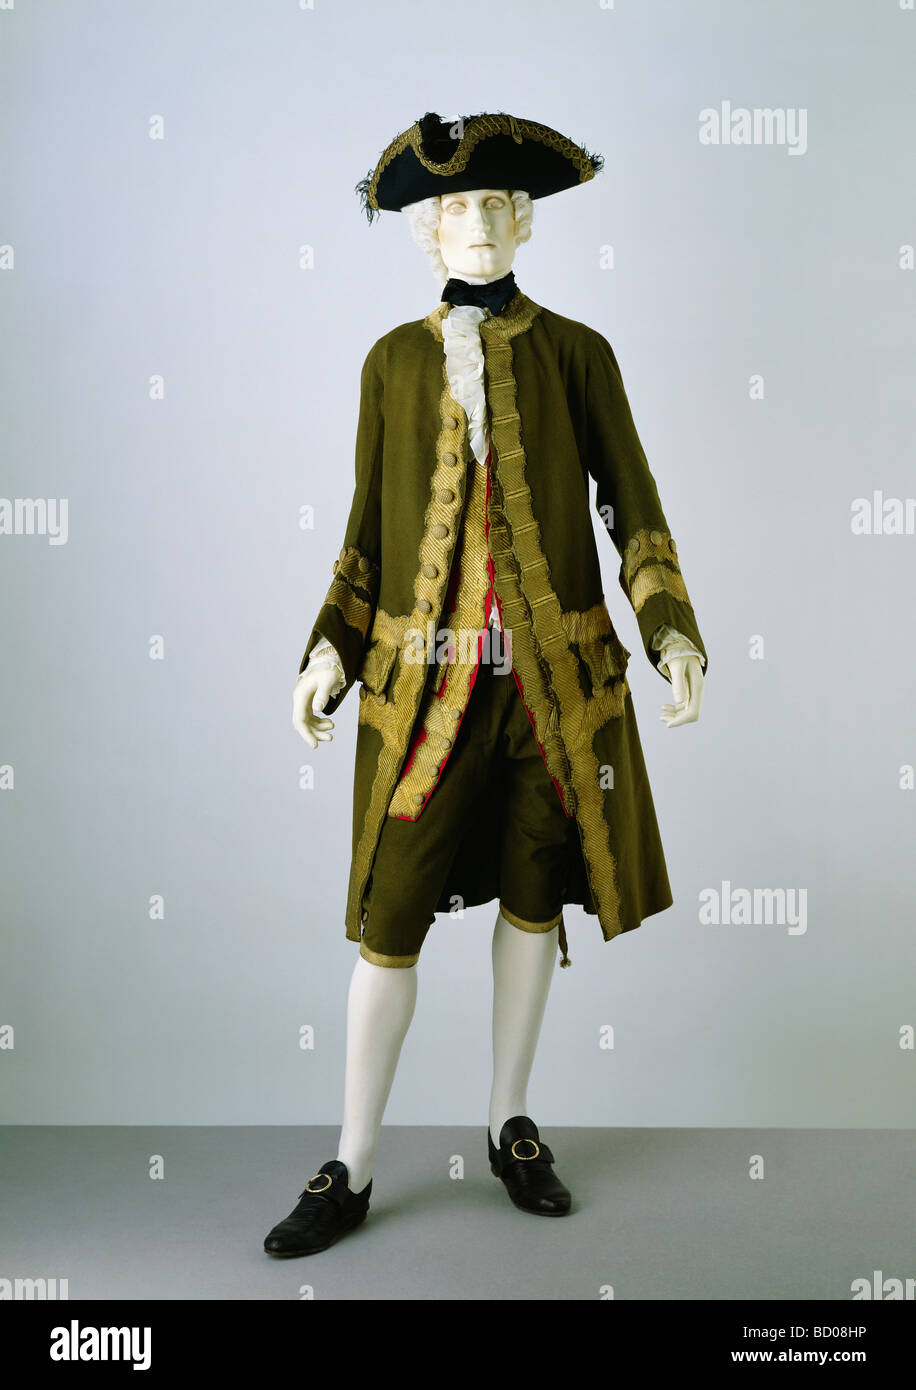 Coat, breeches and waistcoat. England, 18th century Stock Photo